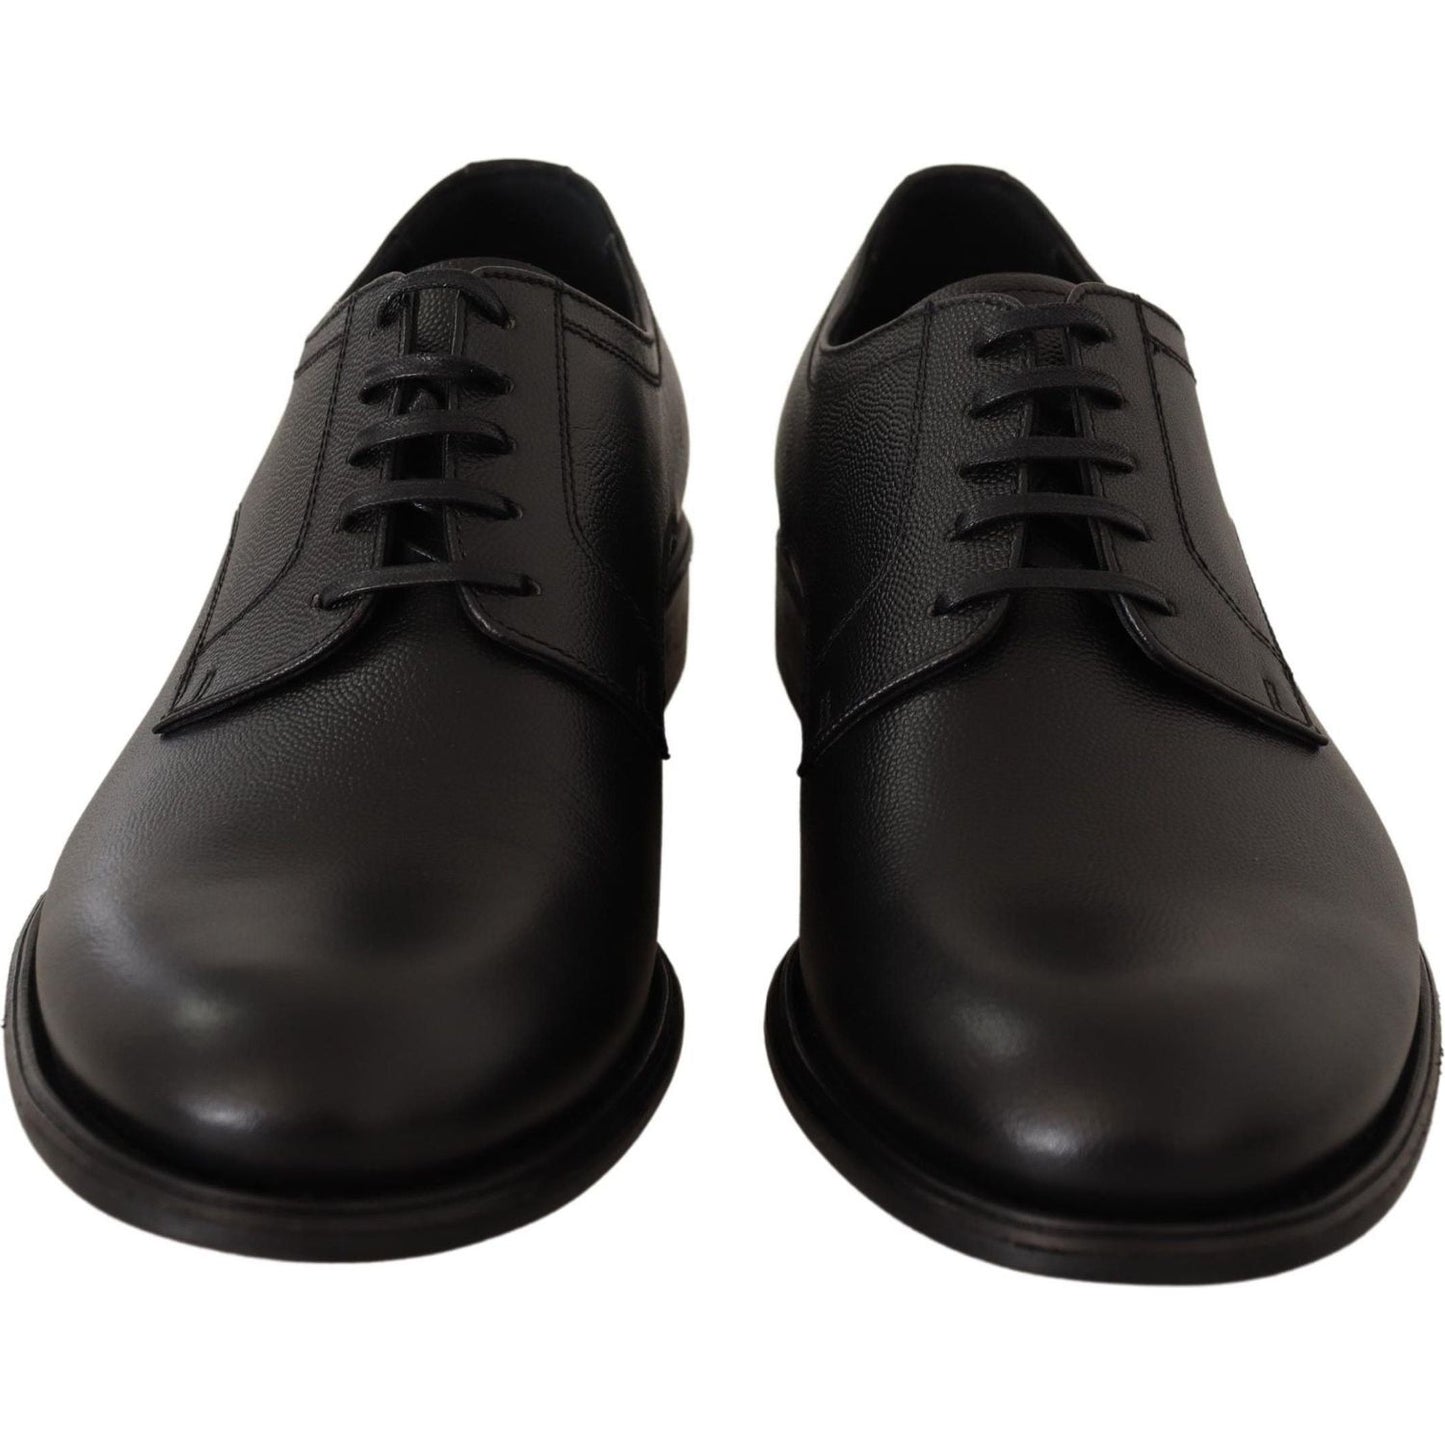 Dolce & Gabbana | Black Leather Lace Up Mens Formal Derby Shoes | 459.00 - McRichard Designer Brands